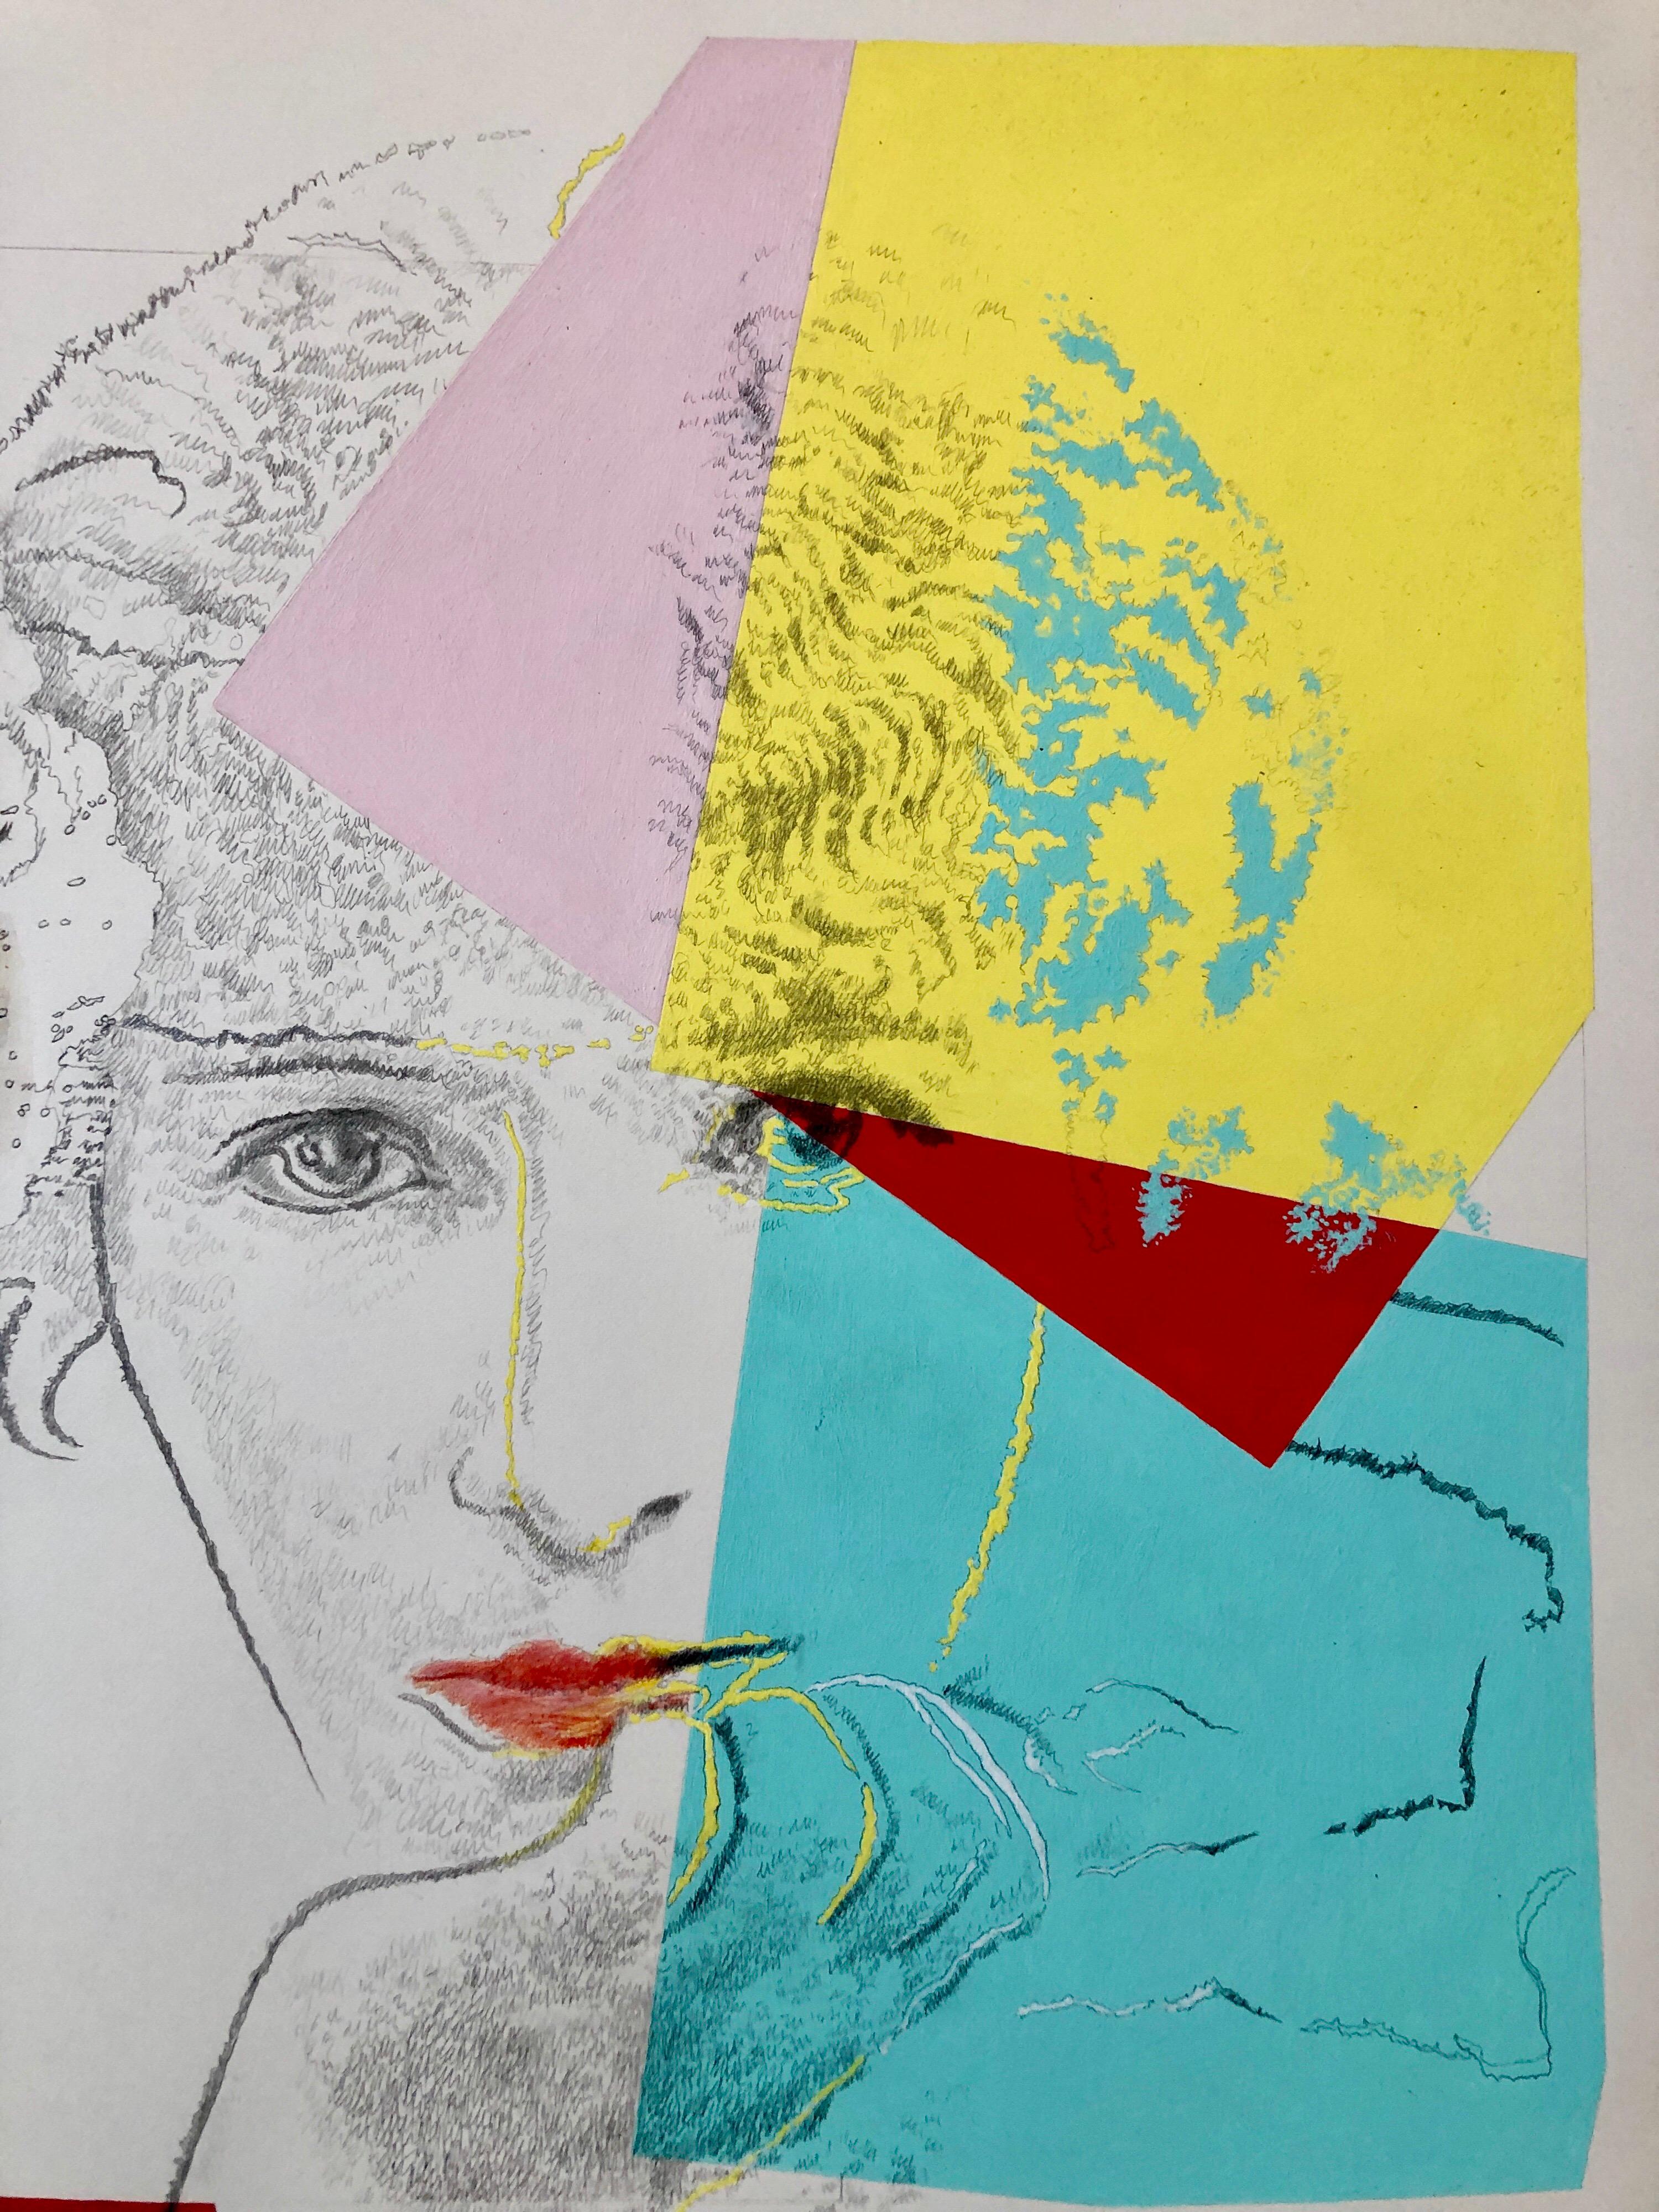 Stillleben mit Sully und Warhol, Pop Art Mixed Media, signierte Gemäldezeichnung in Mischtechnik (Pop-Art), Print, von Josef Levi